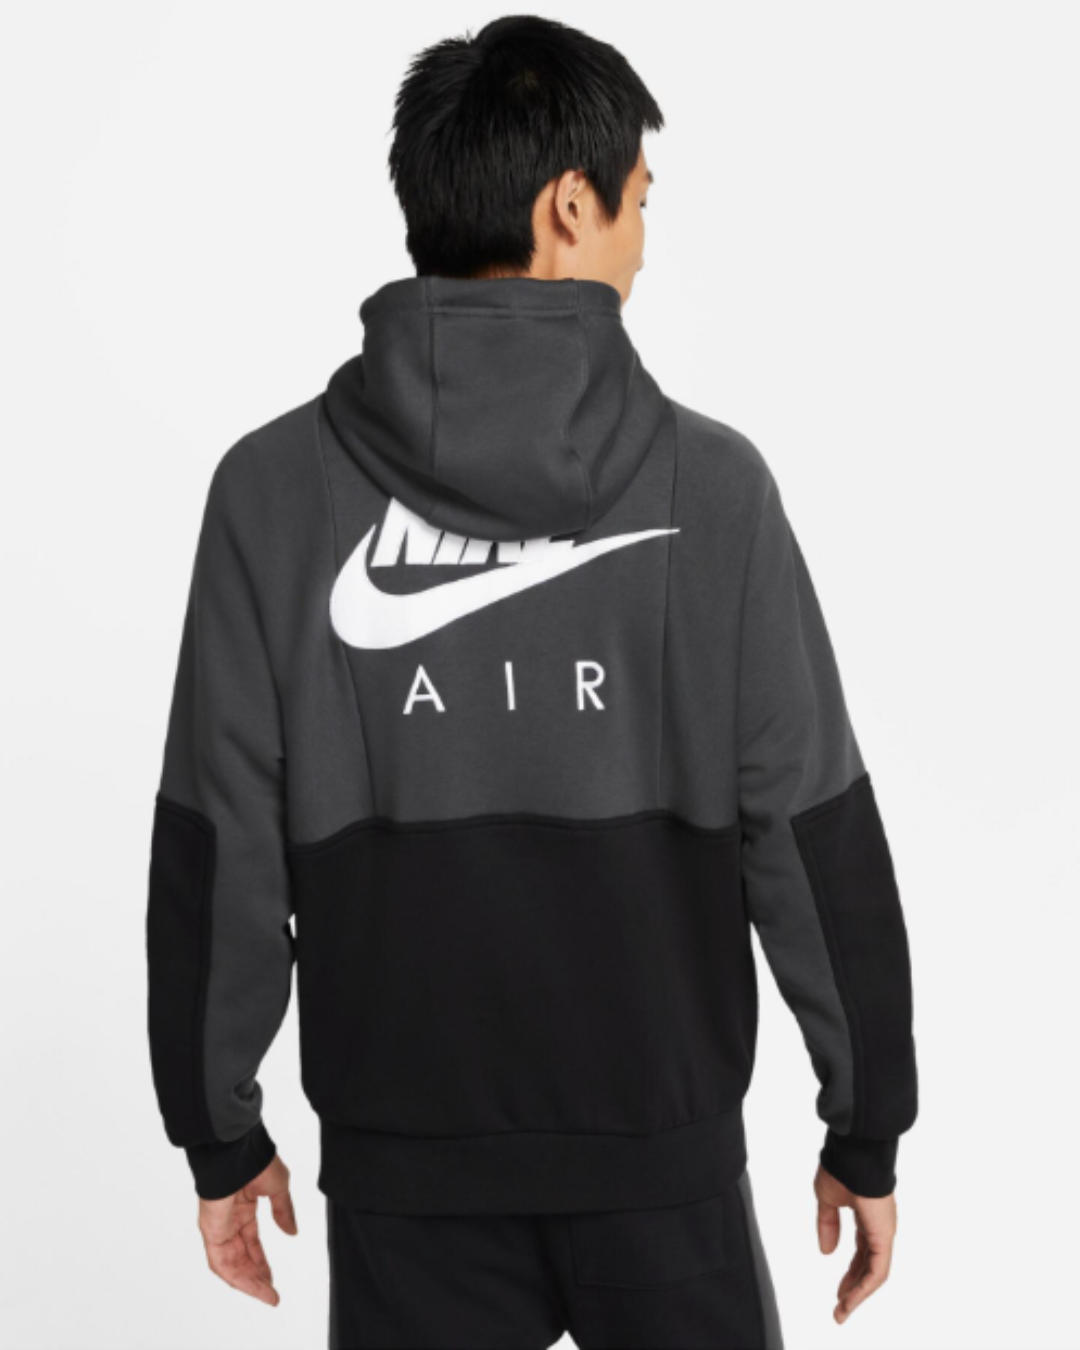 Veste capuche Nike Air fleece - Noir/Blanc